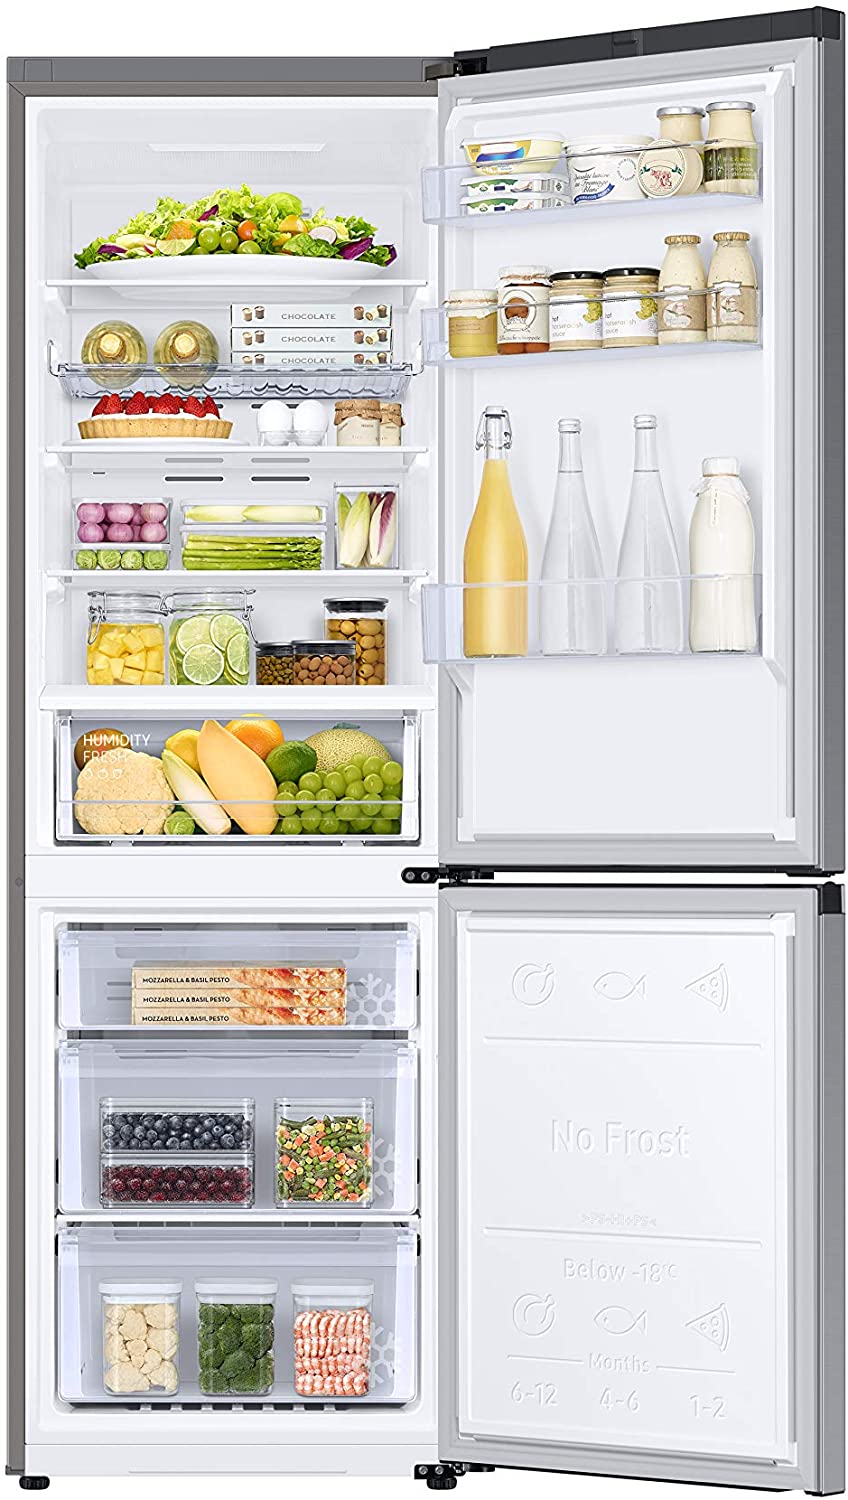 Offerte di settembre: ultima occasione per acquistare frigoriferi,  lavatrici e forni con sconti fino al 50%! - Tom's Hardware